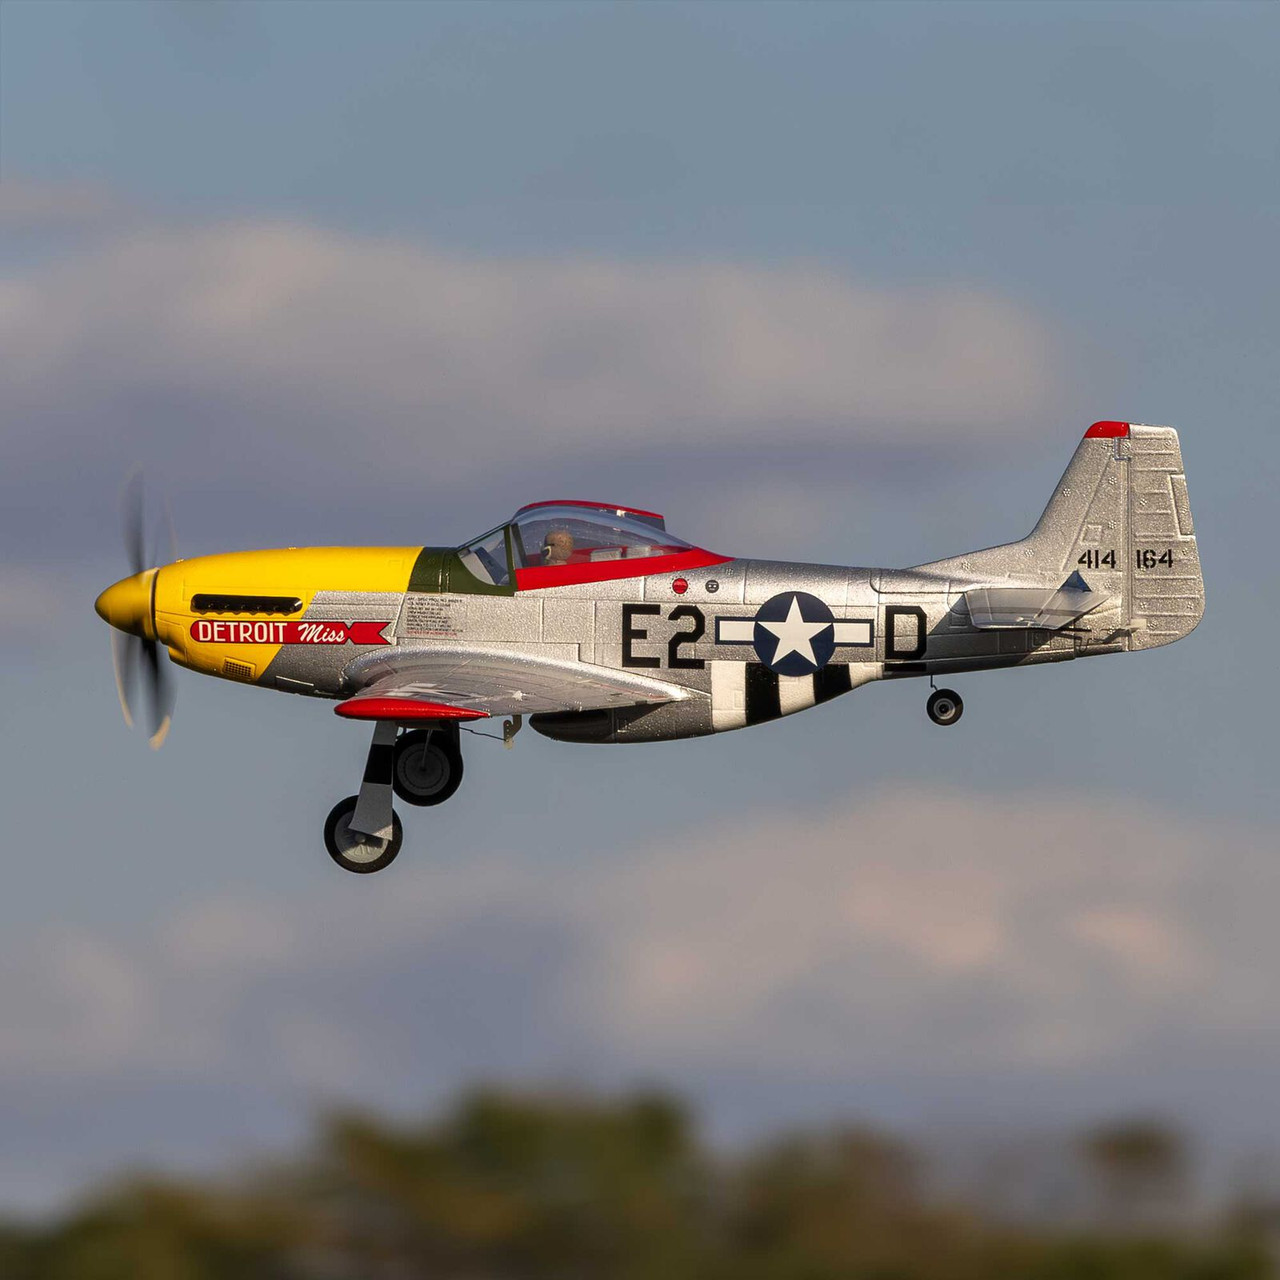 Eflite UMX P-51D Mustang “Detroit Miss” BNF Basic 